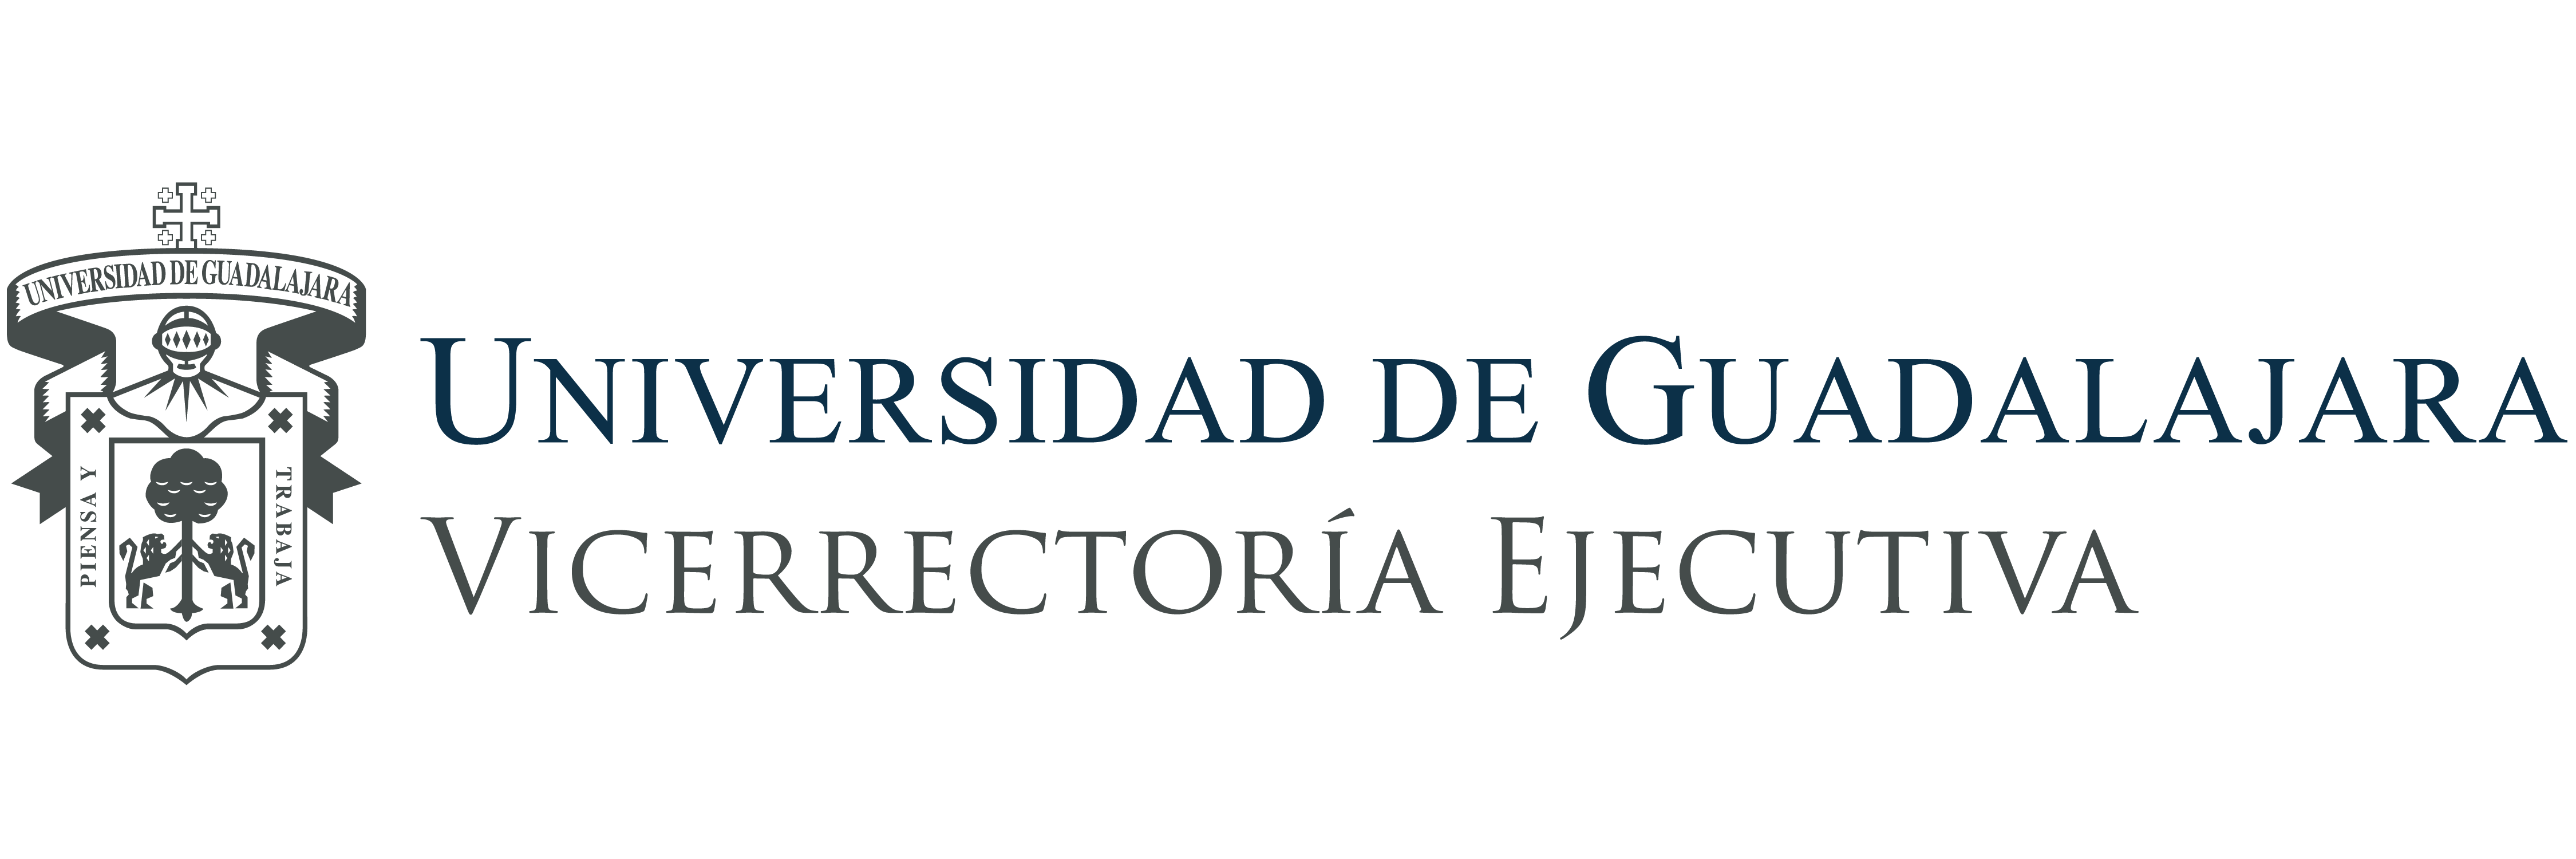 Universidad de Guadalajara - Vicerrectoria Ejecutiva